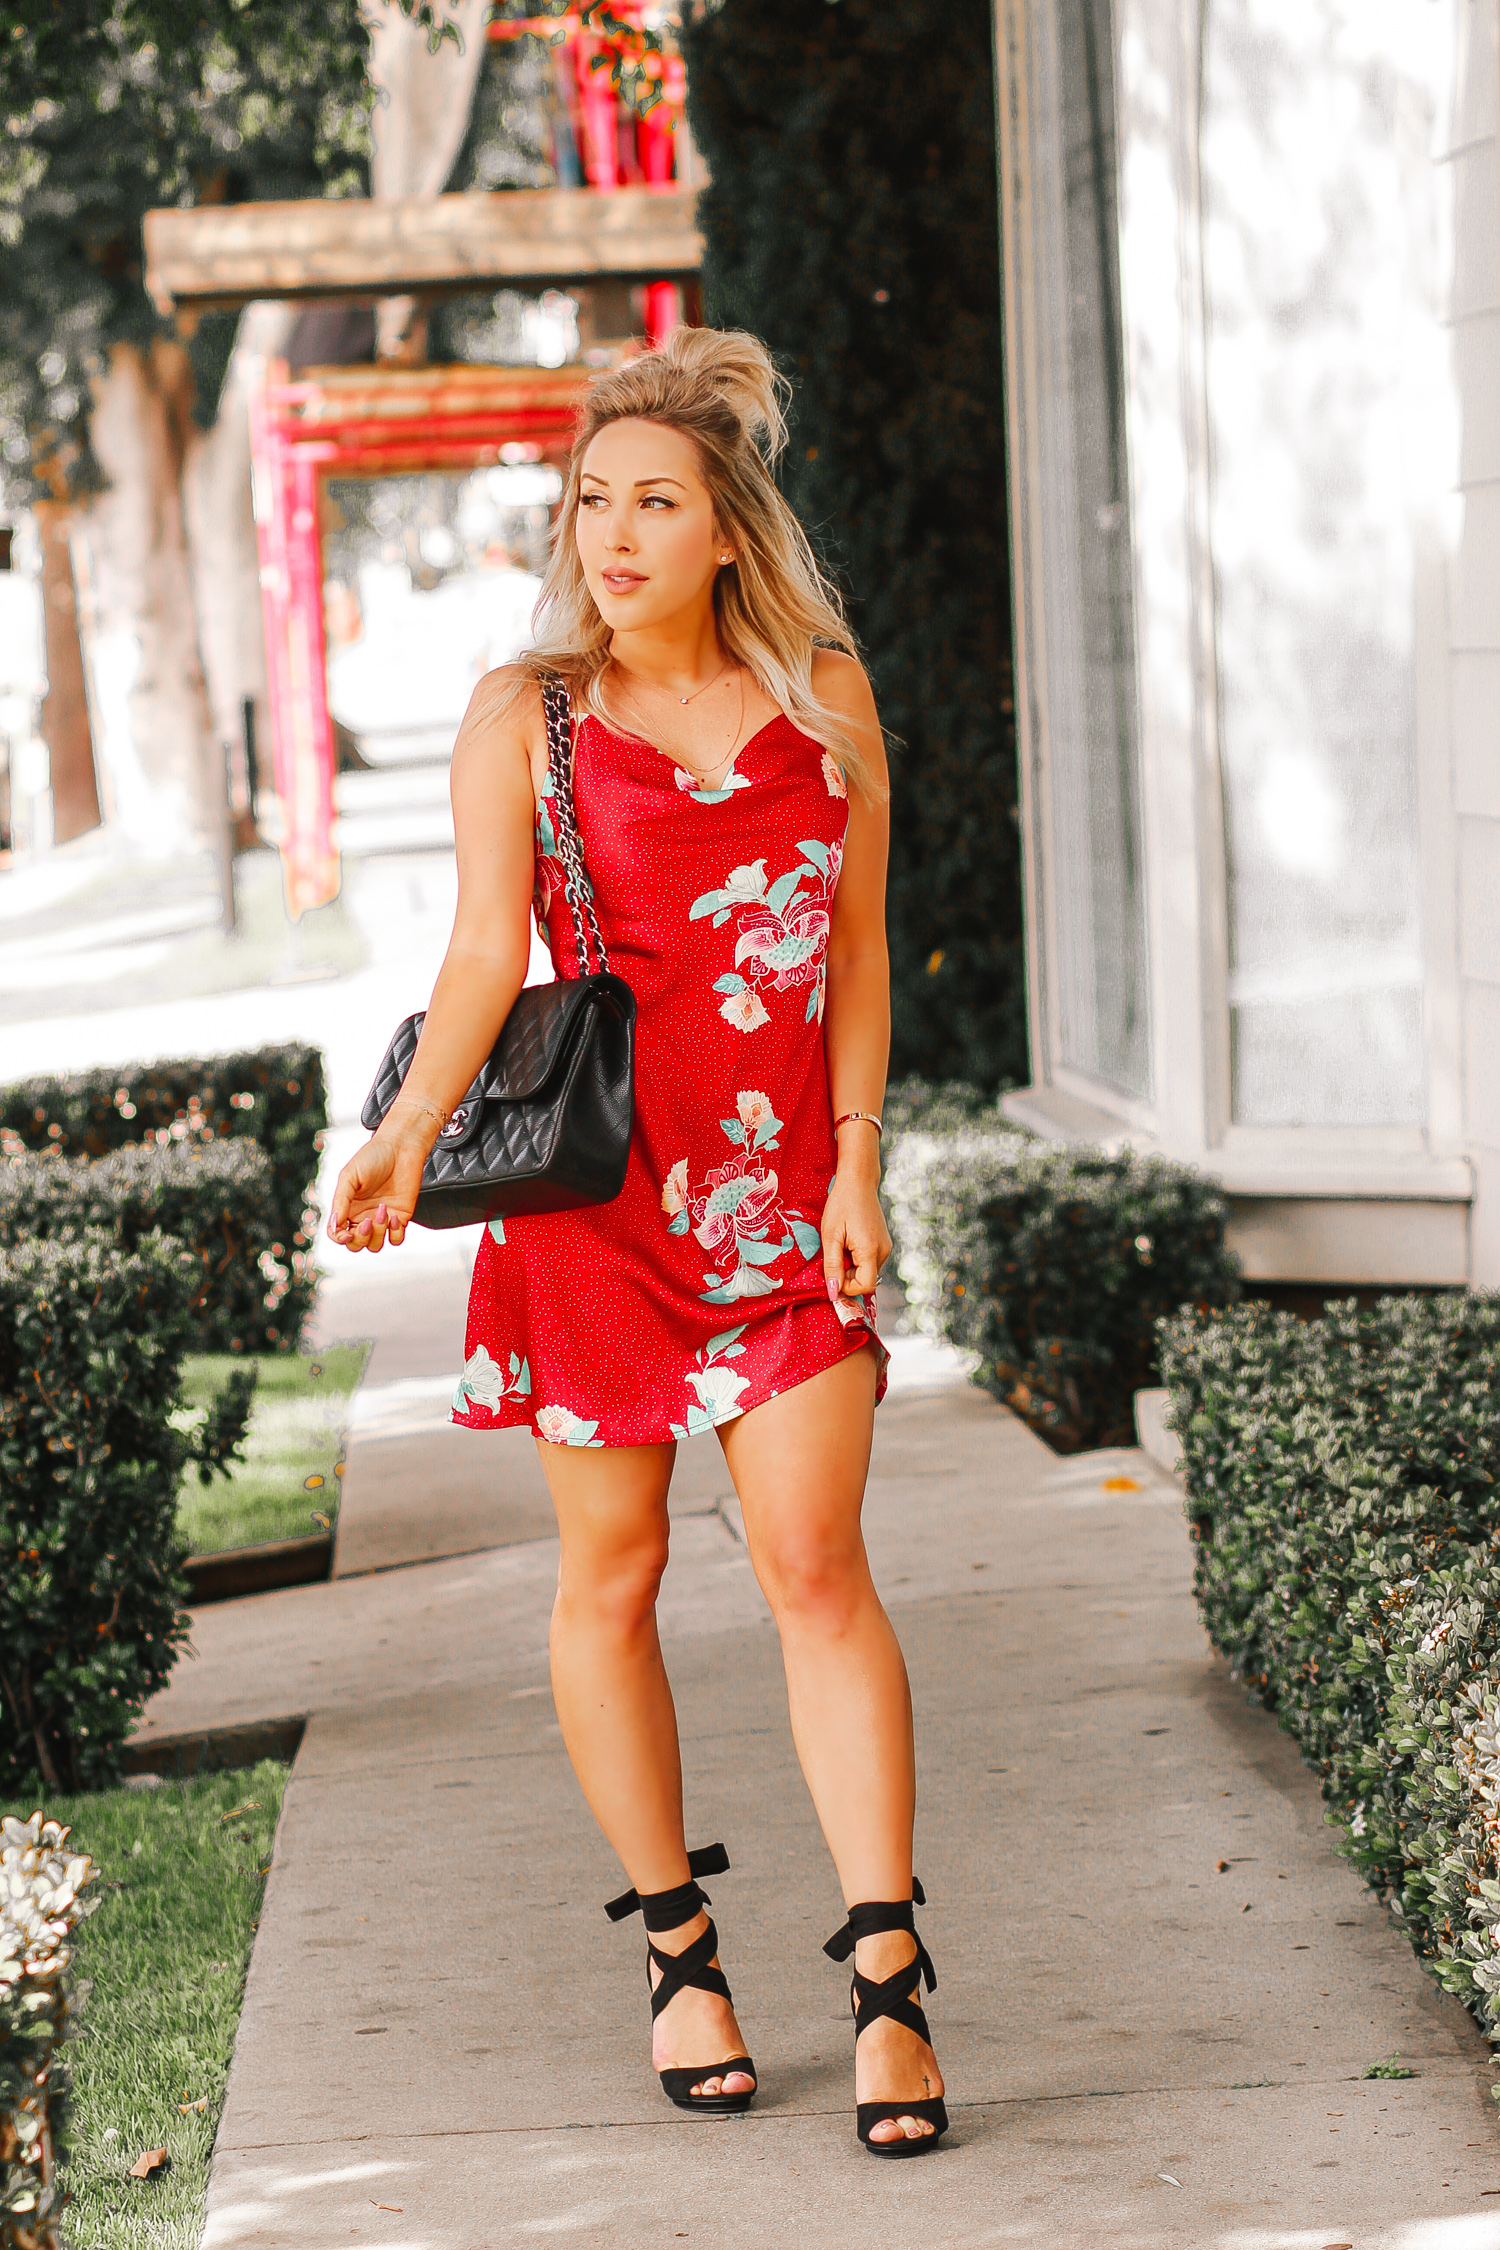 Red Slip Dress @iloveshowpo | Black Chanel Bag | Blondie in the City by Hayley Larue